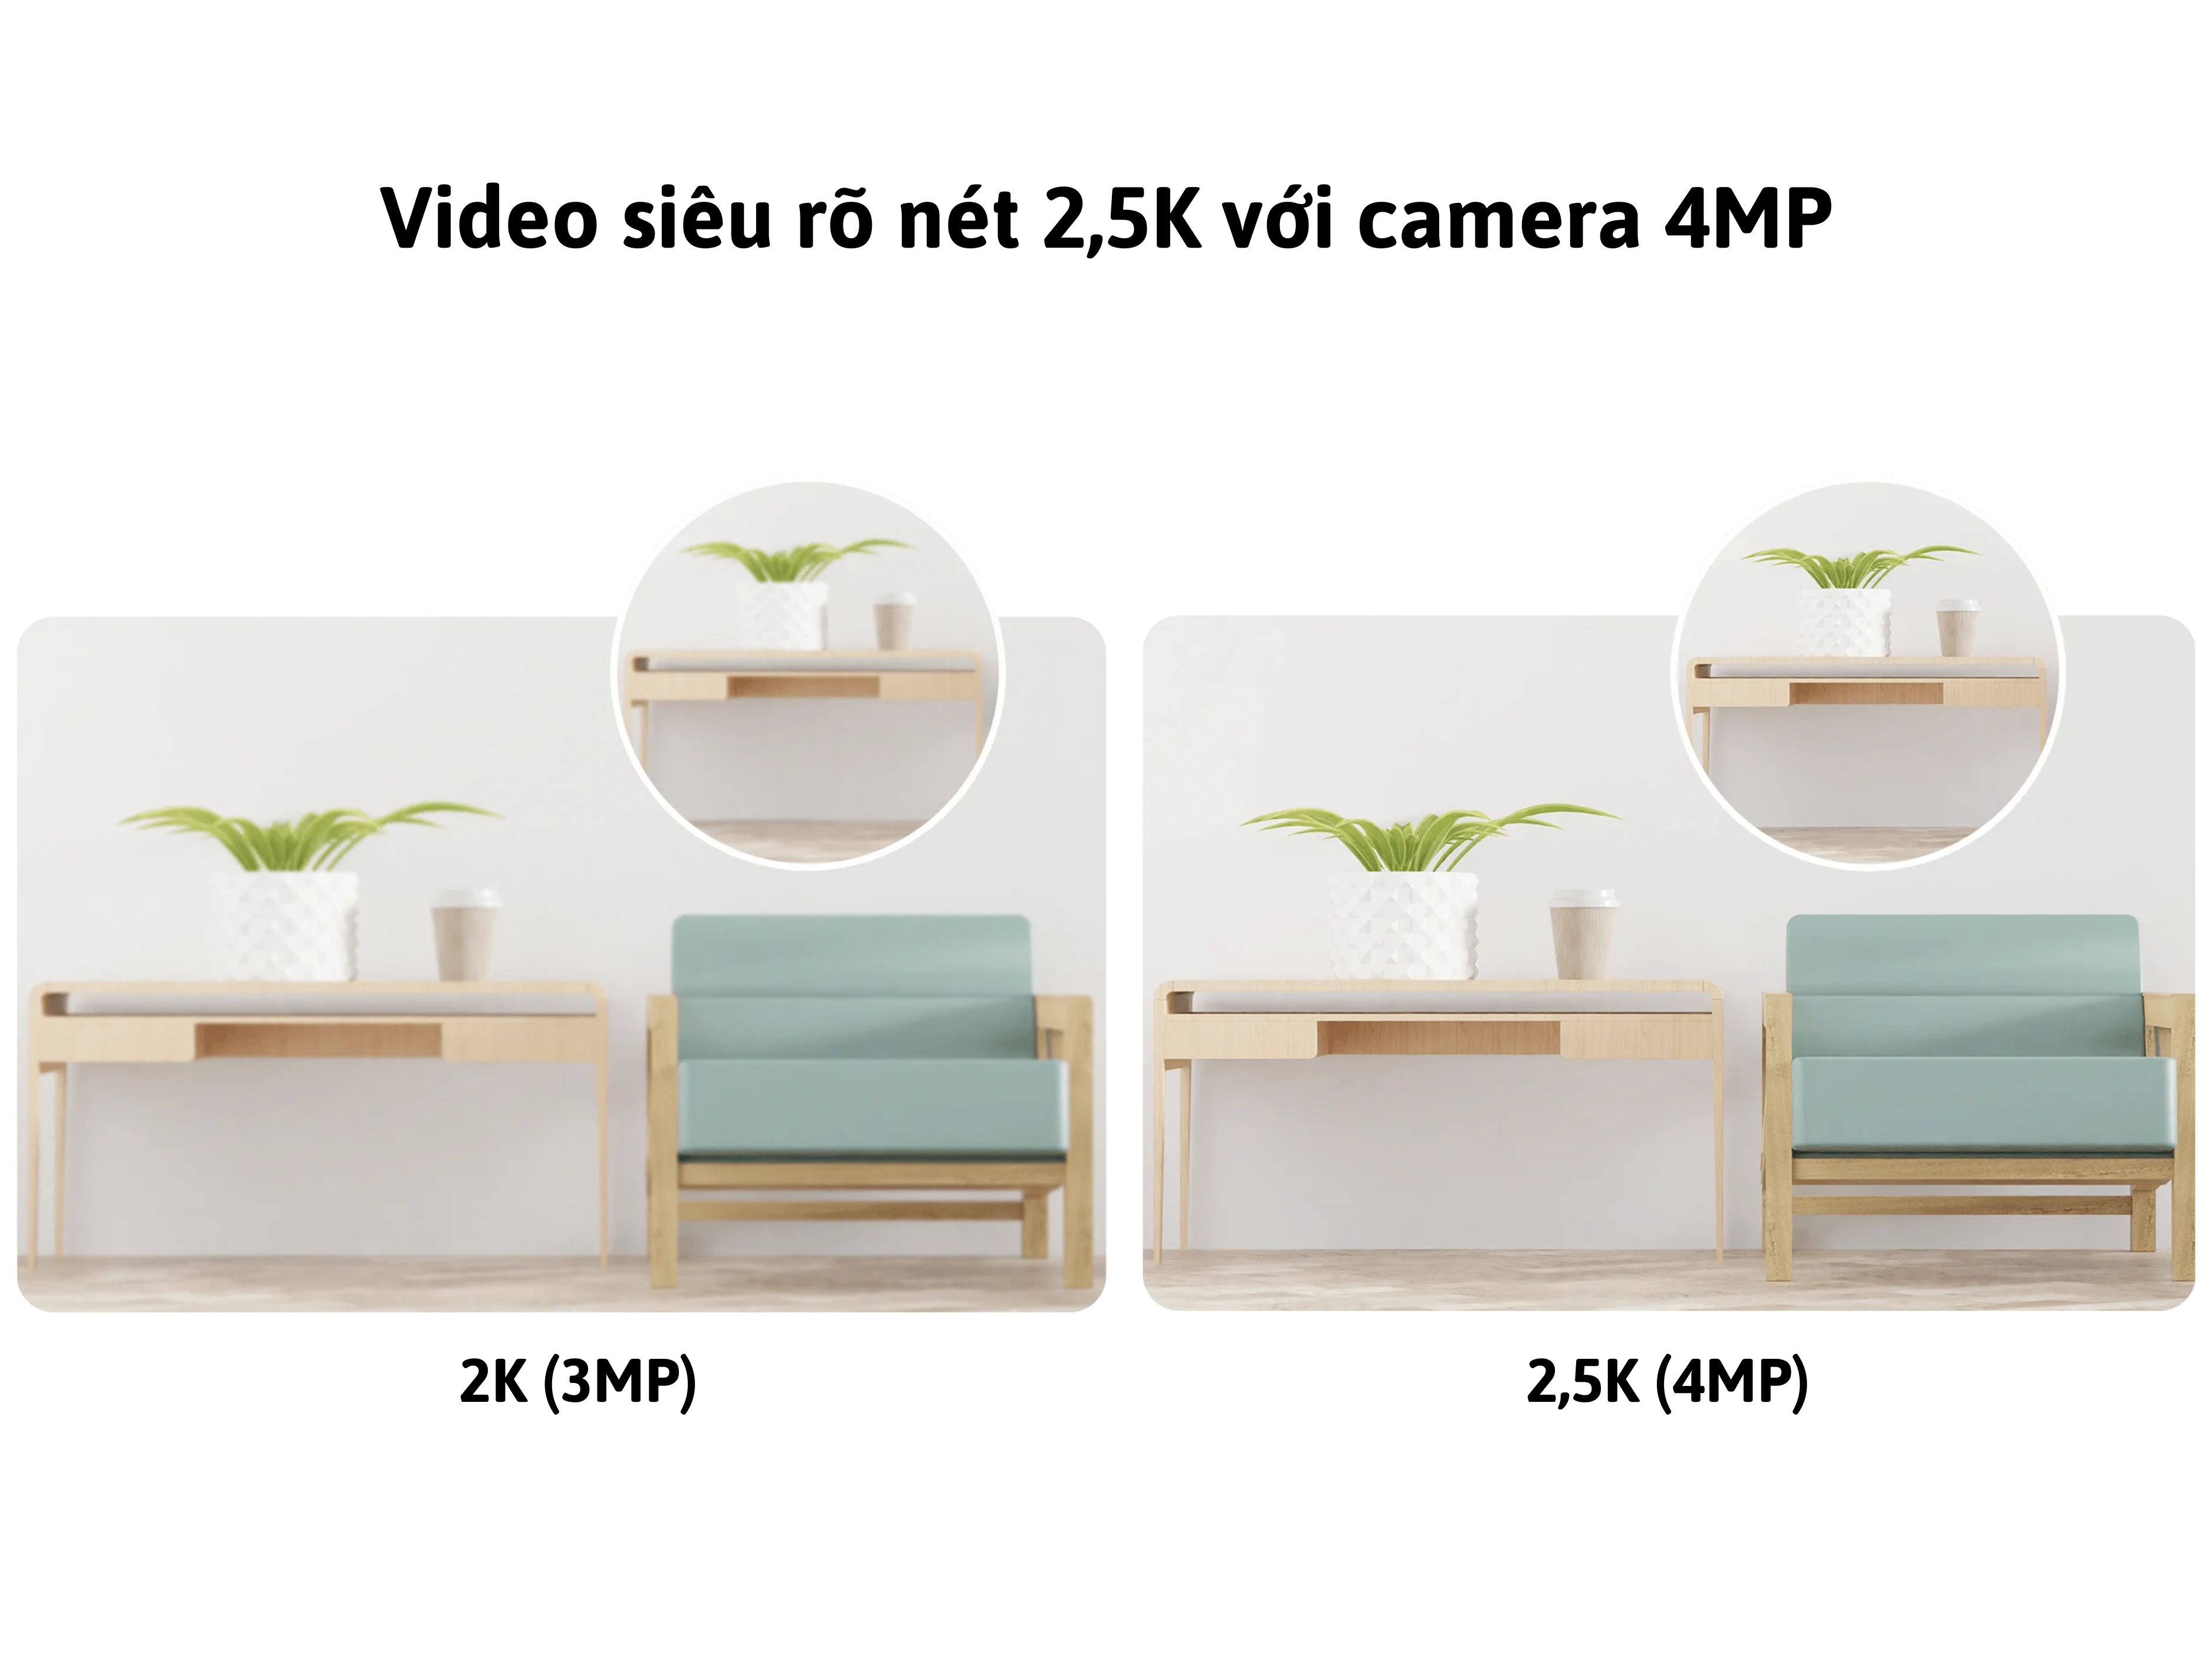 C400 cho ra video siêu rõ nét 2.5K 